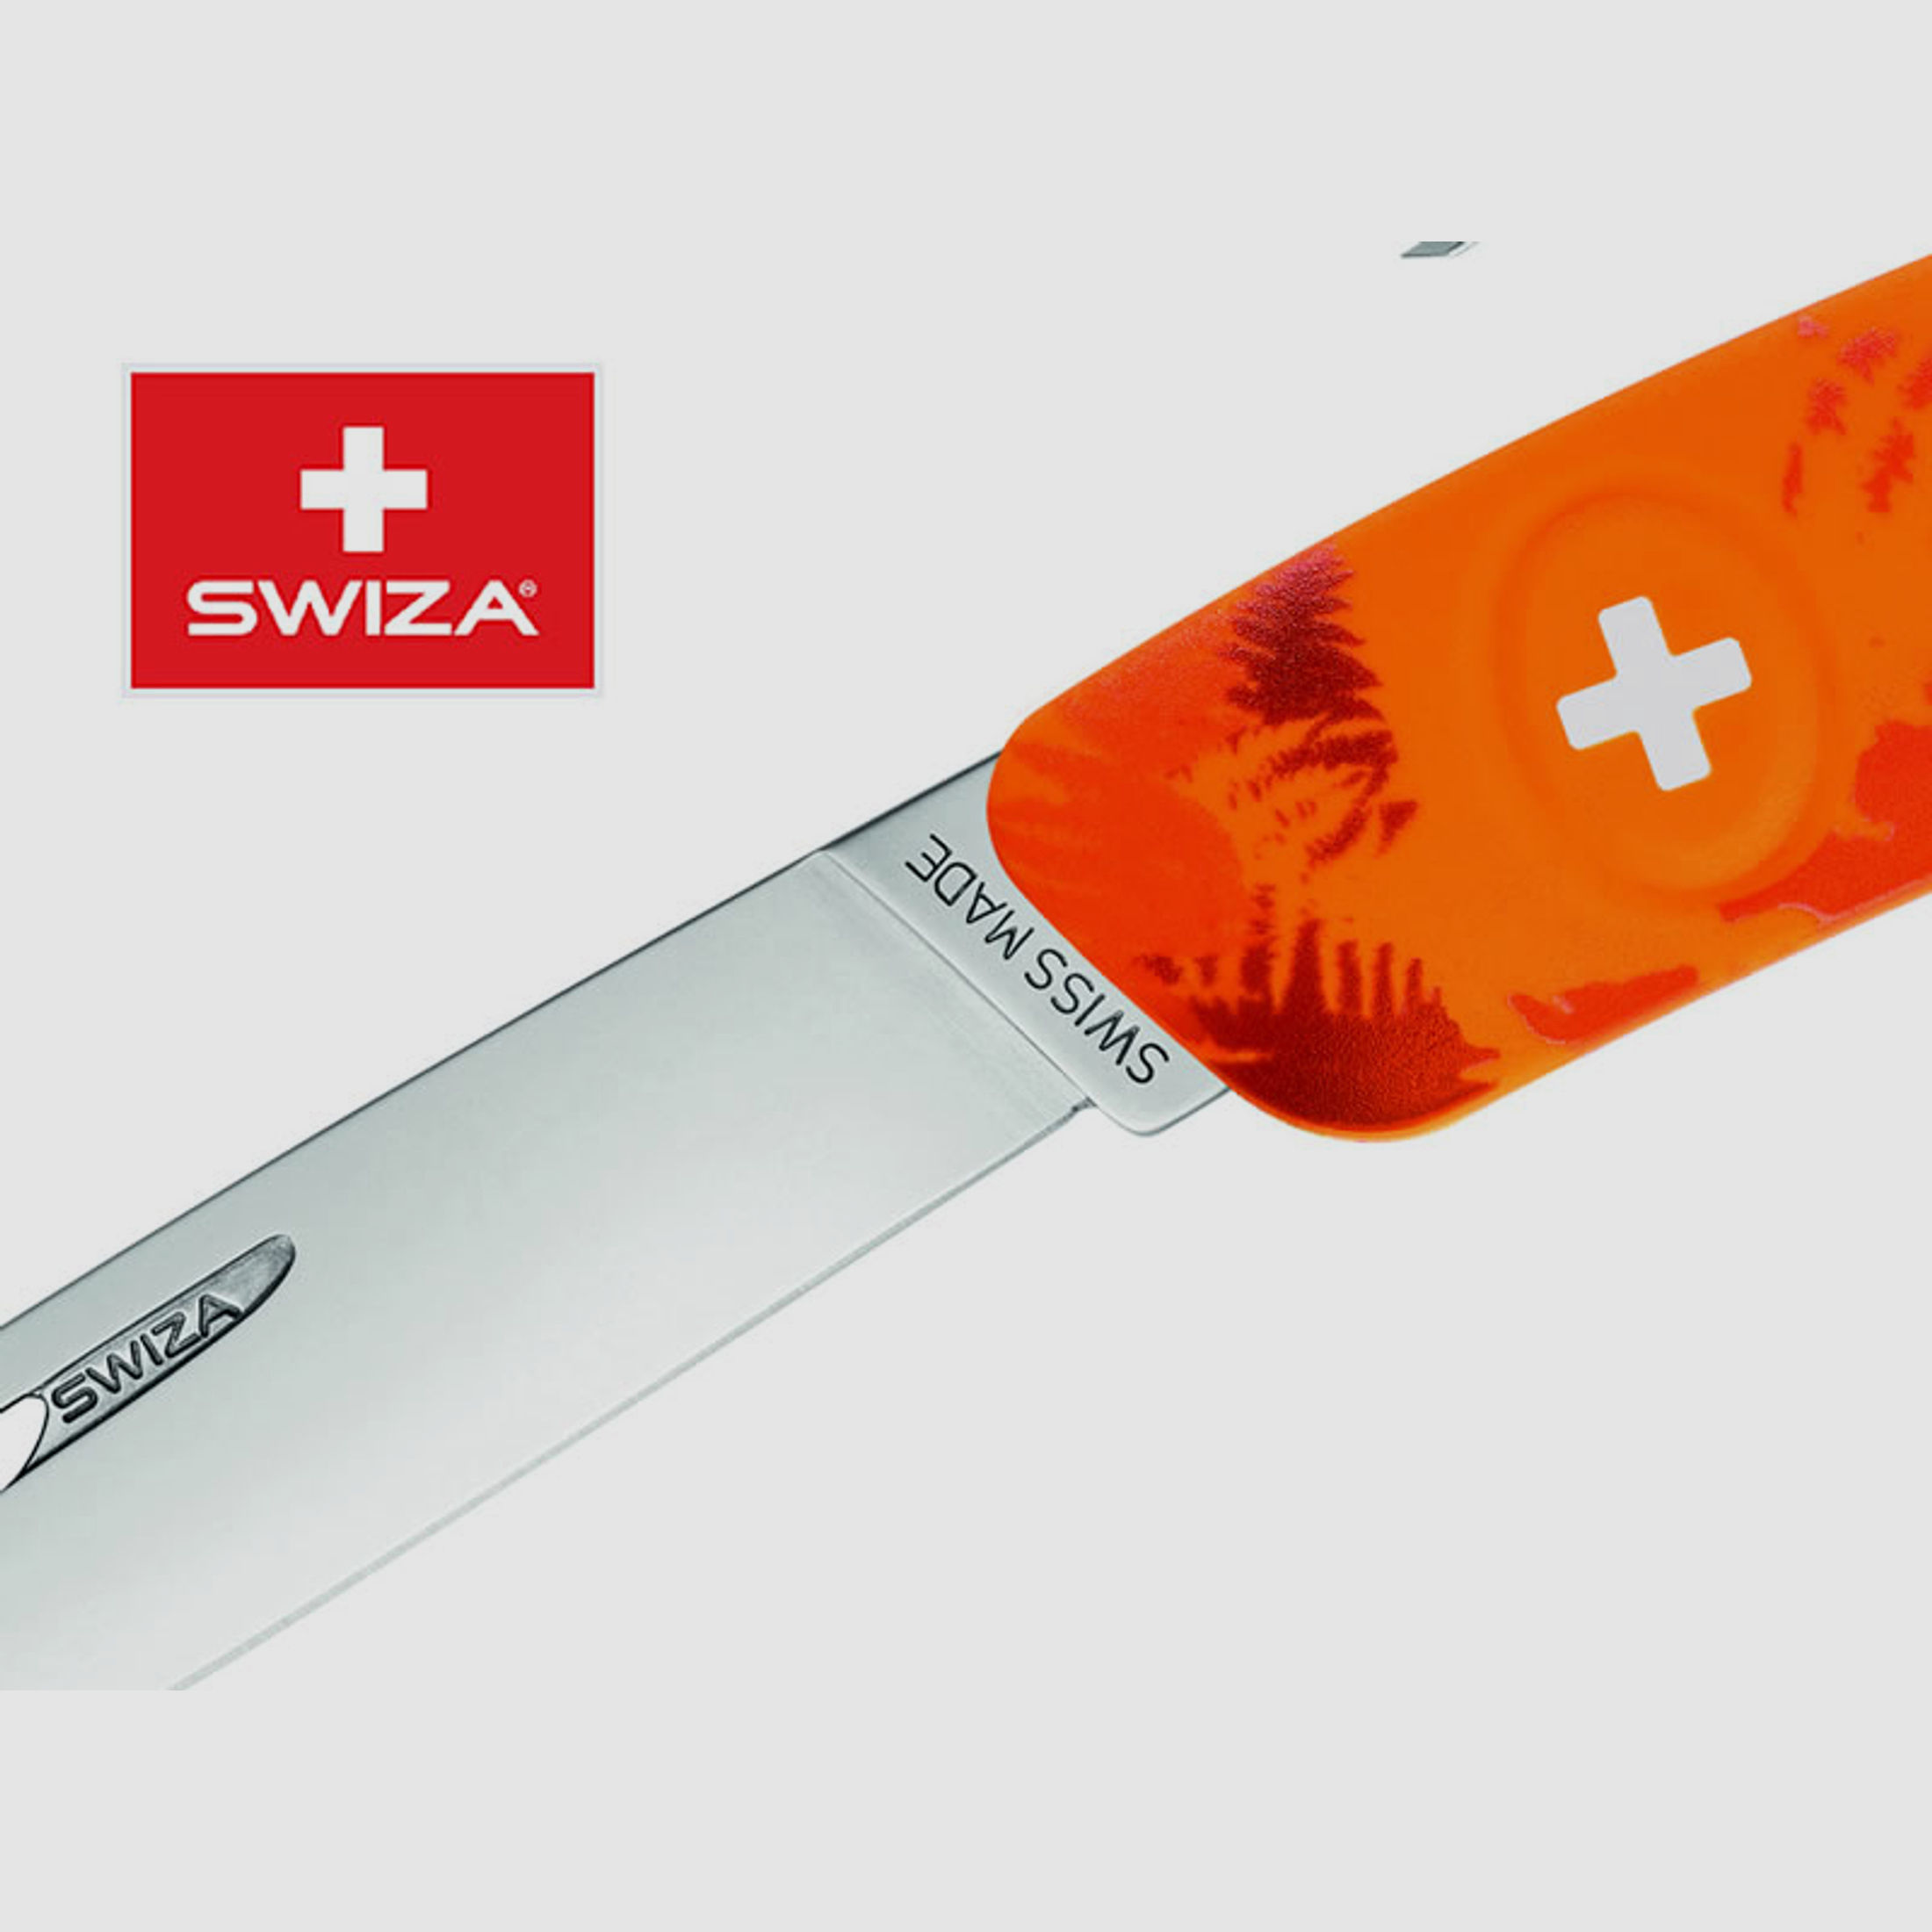 SWIZA Schweizer Messer FILIX D01 CAMO FARN ORANGE, Edelstahl 440, 6 Funktionen, Korkenzieher